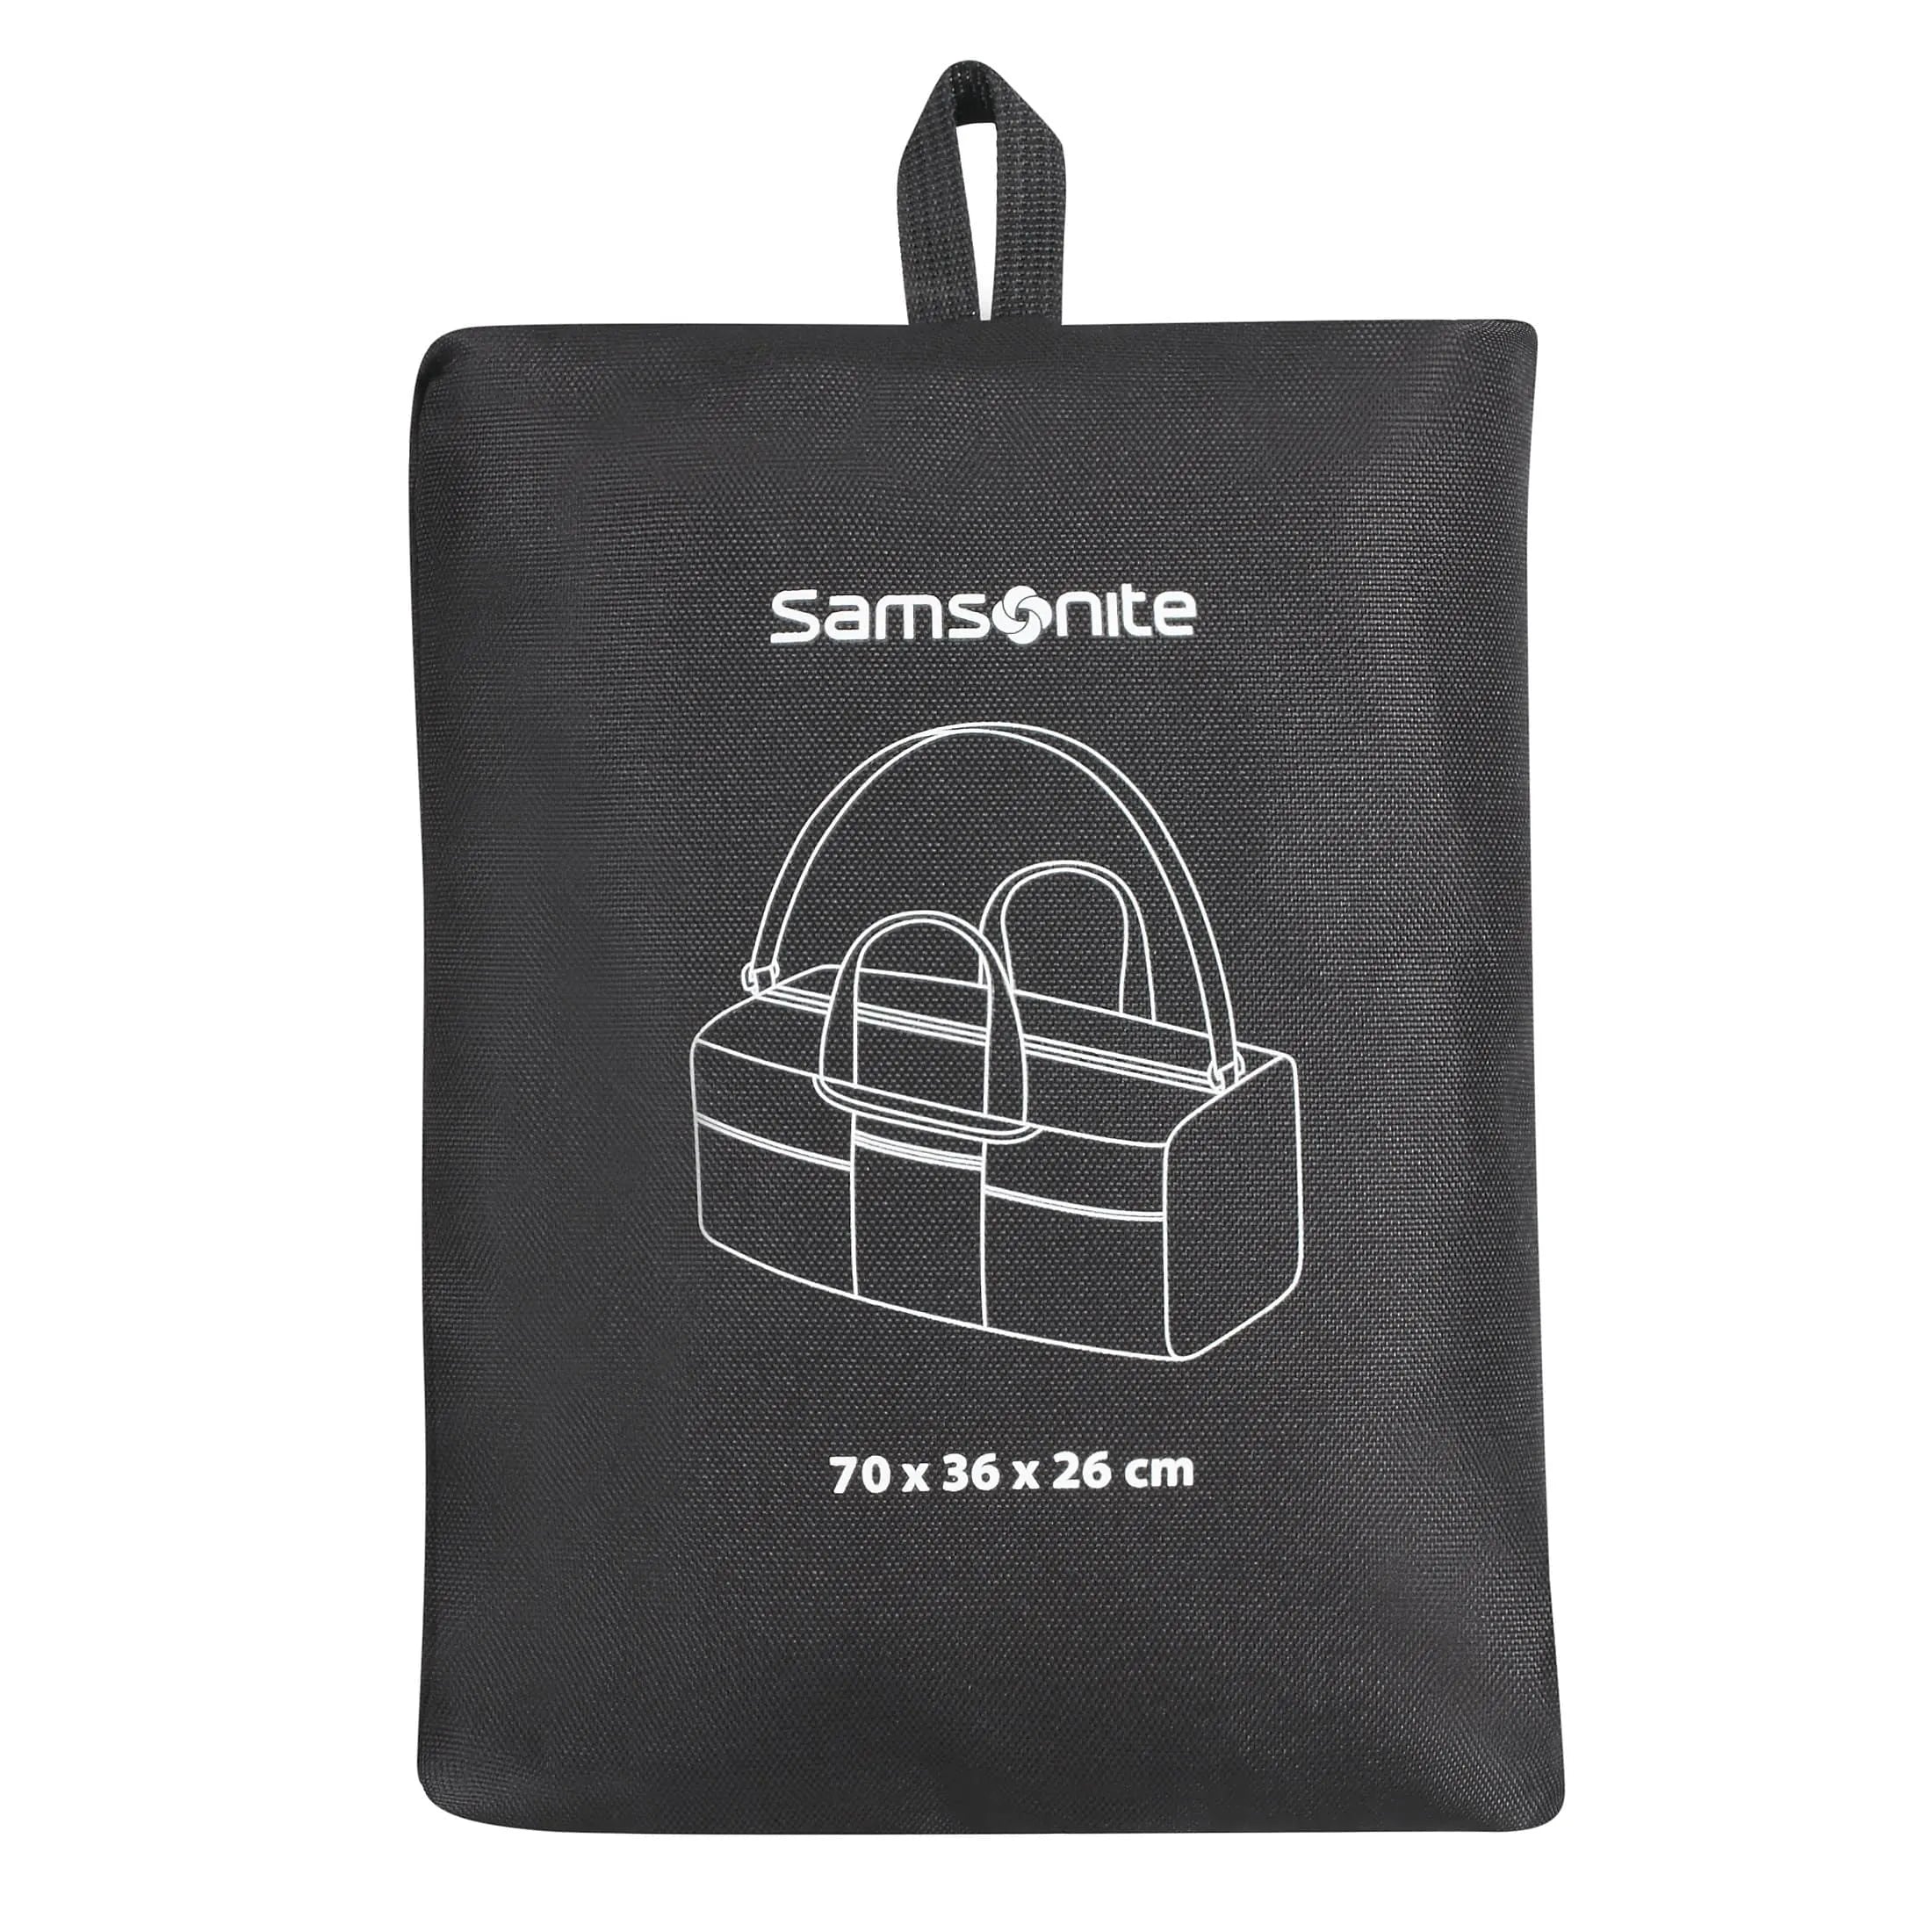 Samsonite Travel Accessories Reisetasche 70 cm - midnight blue